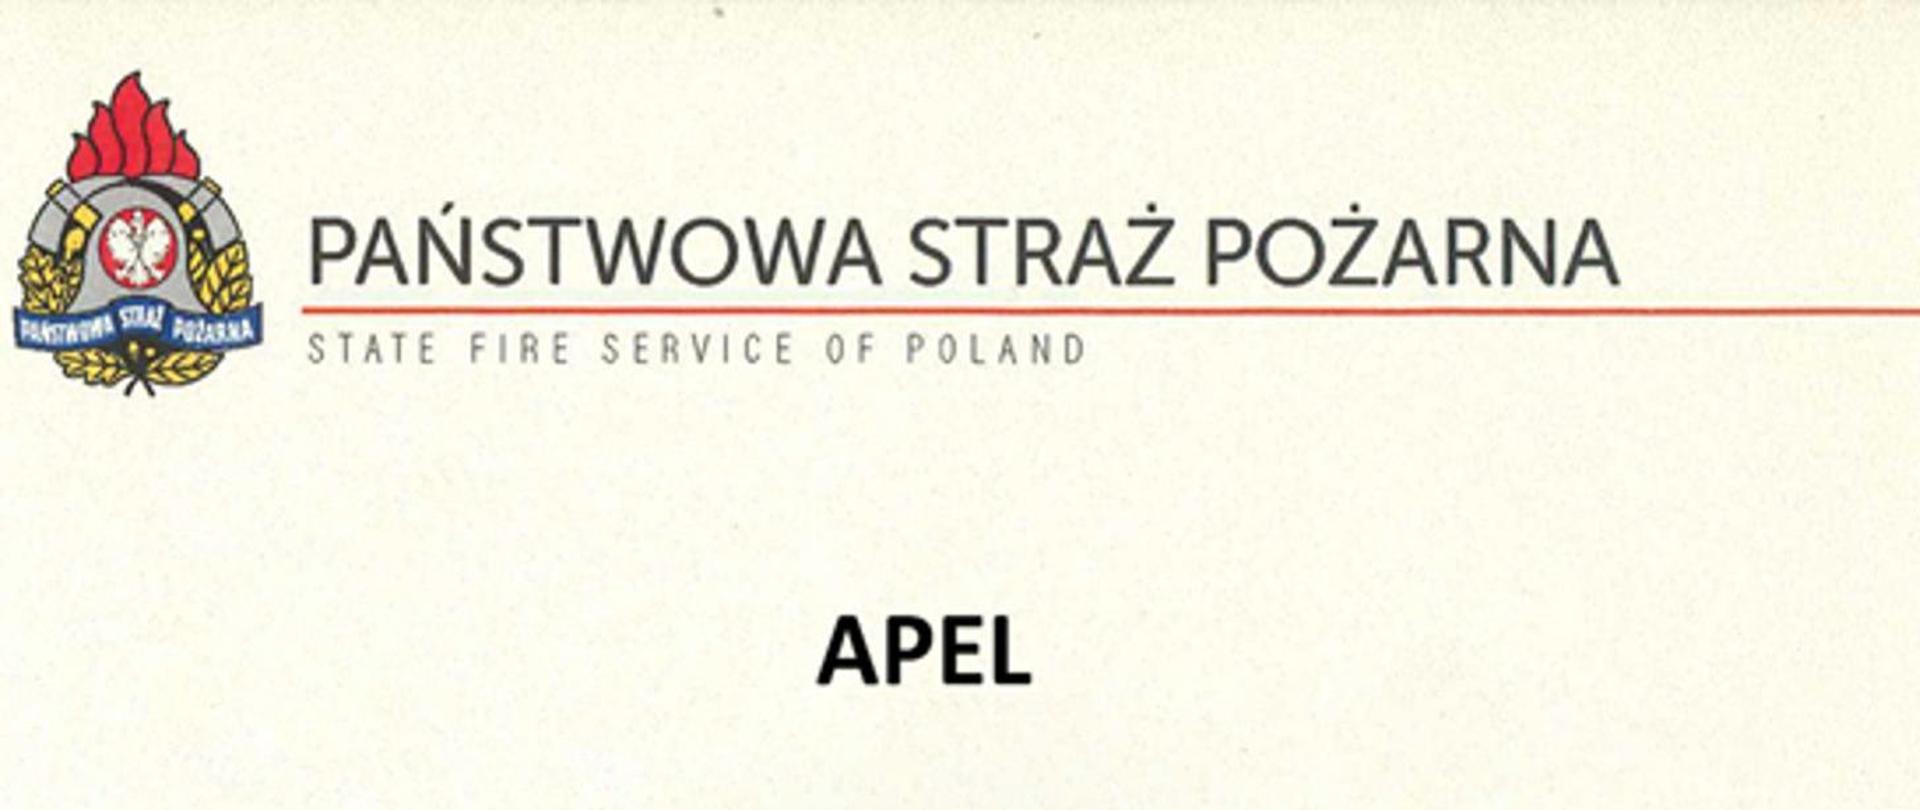 Na zdjęciu widać z lewej logo Państwowej straży Pożarnej, a na środku napis w języku polskim "Państwowa Straż Pożarna" oraz w języku angielskim "State fire service of Poland", a poniżej słowo "Apel".